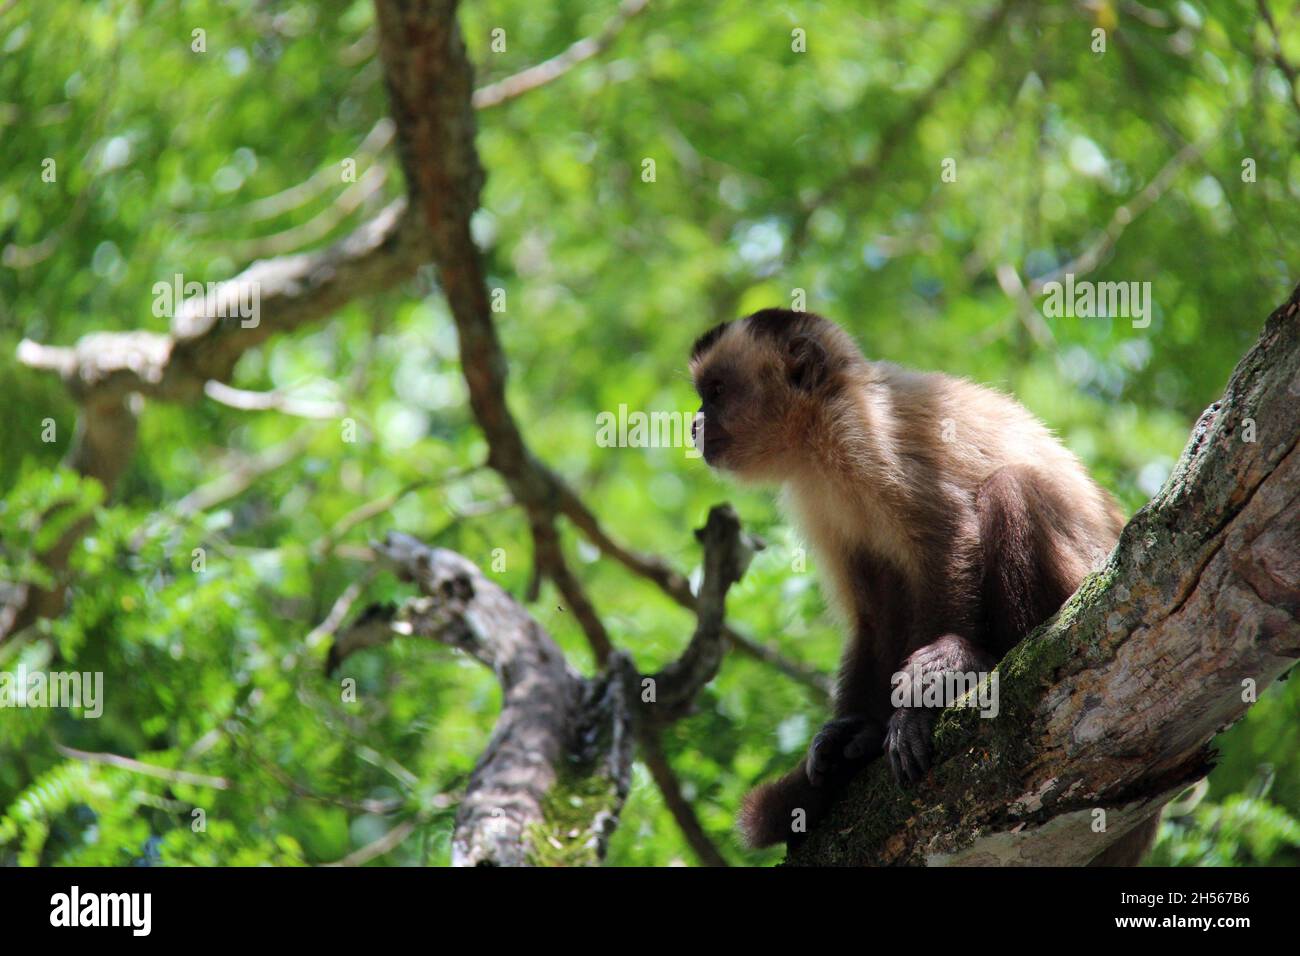 Affe sitzt auf einem Baumstamm, mit verschwommenem Hintergrund. Bonito - Mato Grosso do Sul - Brasilien. Stockfoto